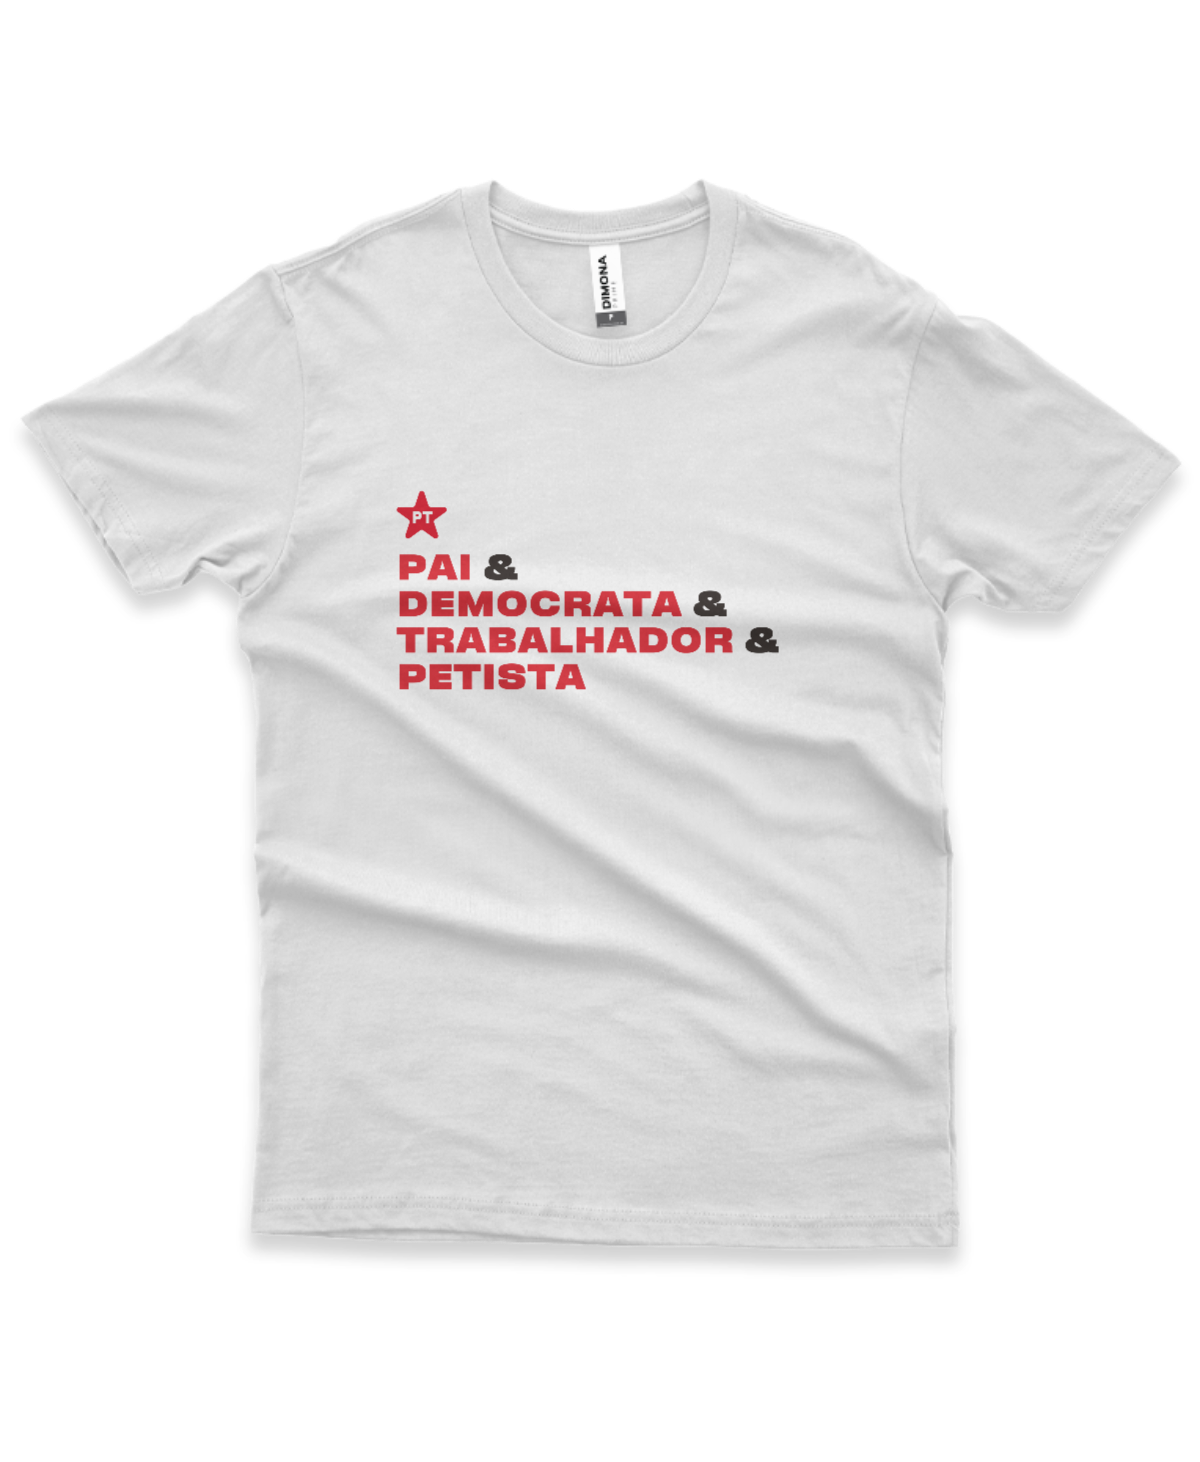 Camiseta Masculina Pai & Democrata